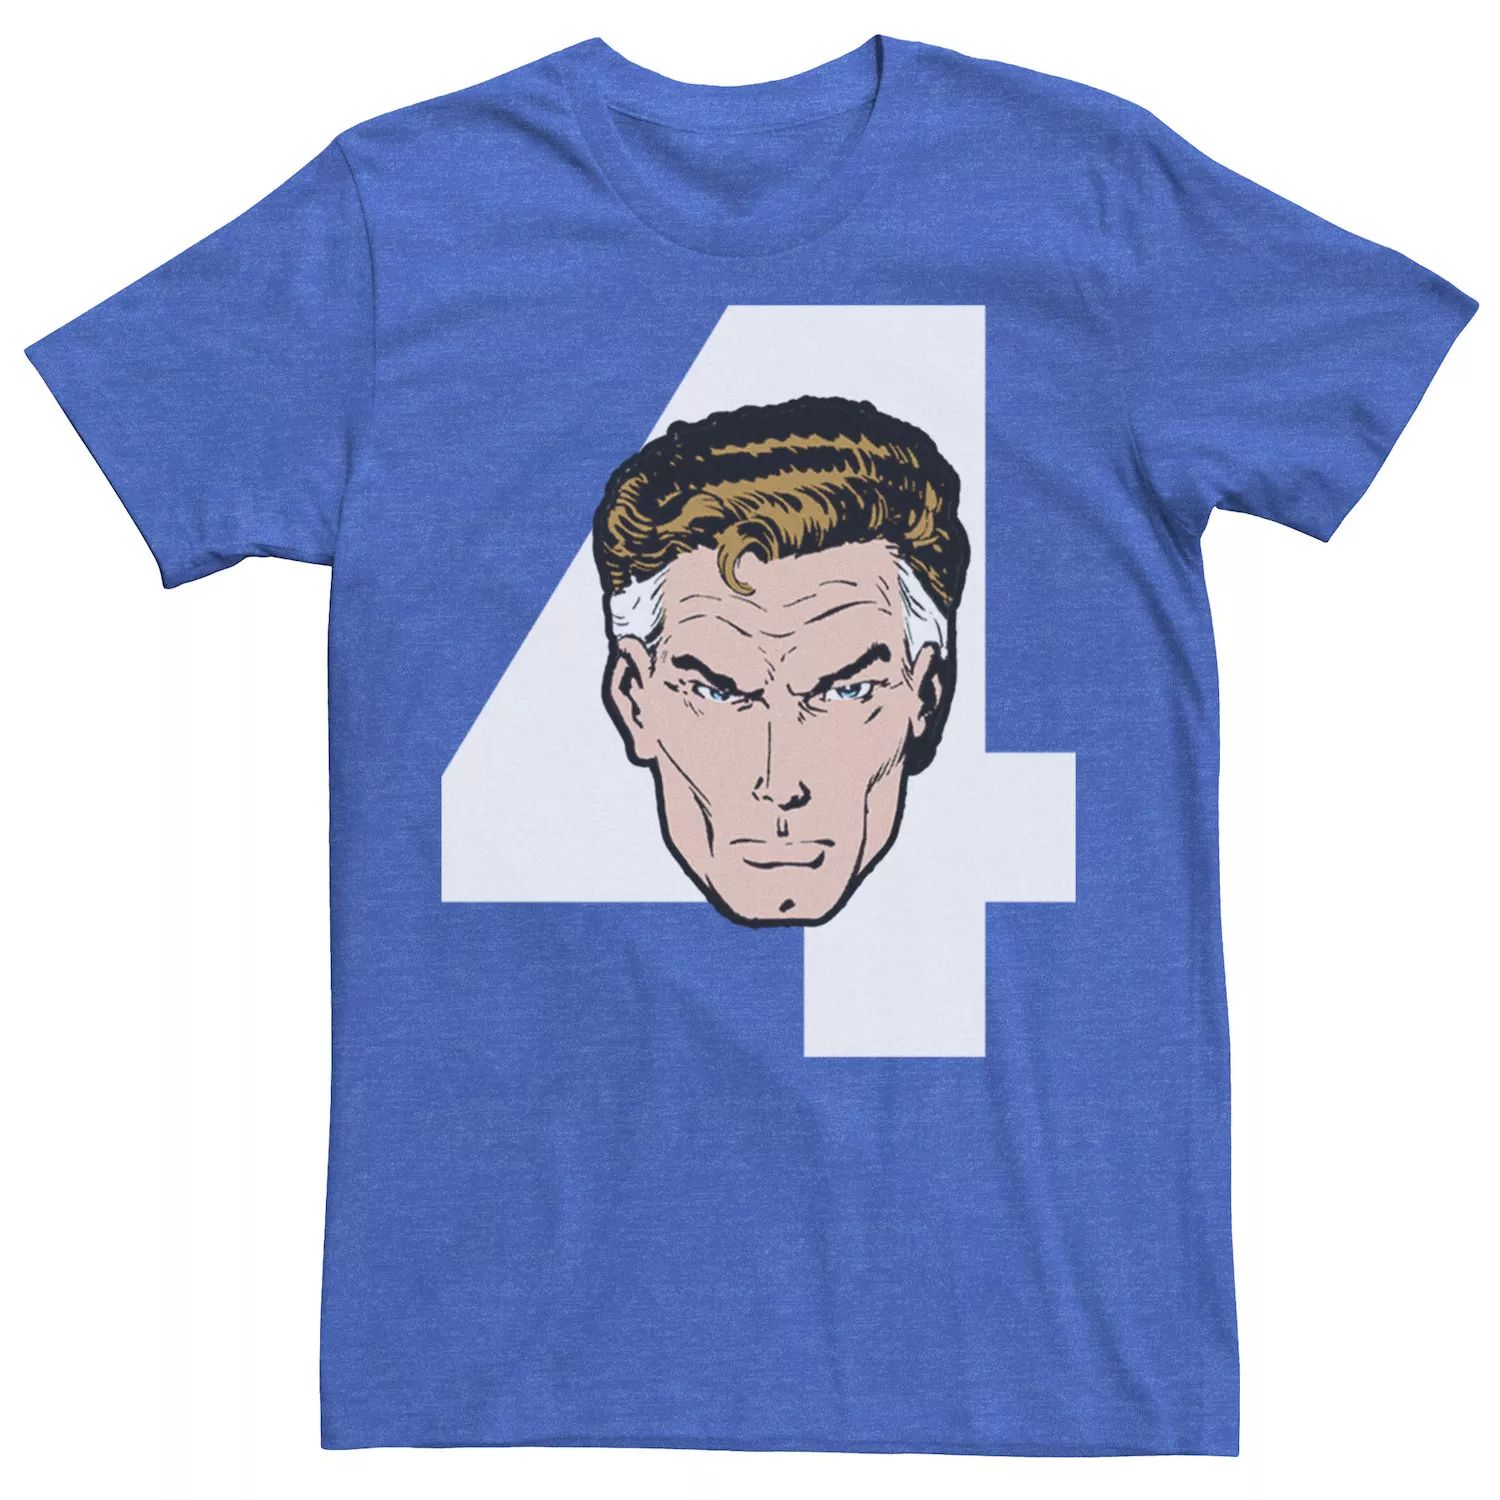 Мужская футболка Fantastic Four Mr. Fantastic с цифрами и портретом Marvel